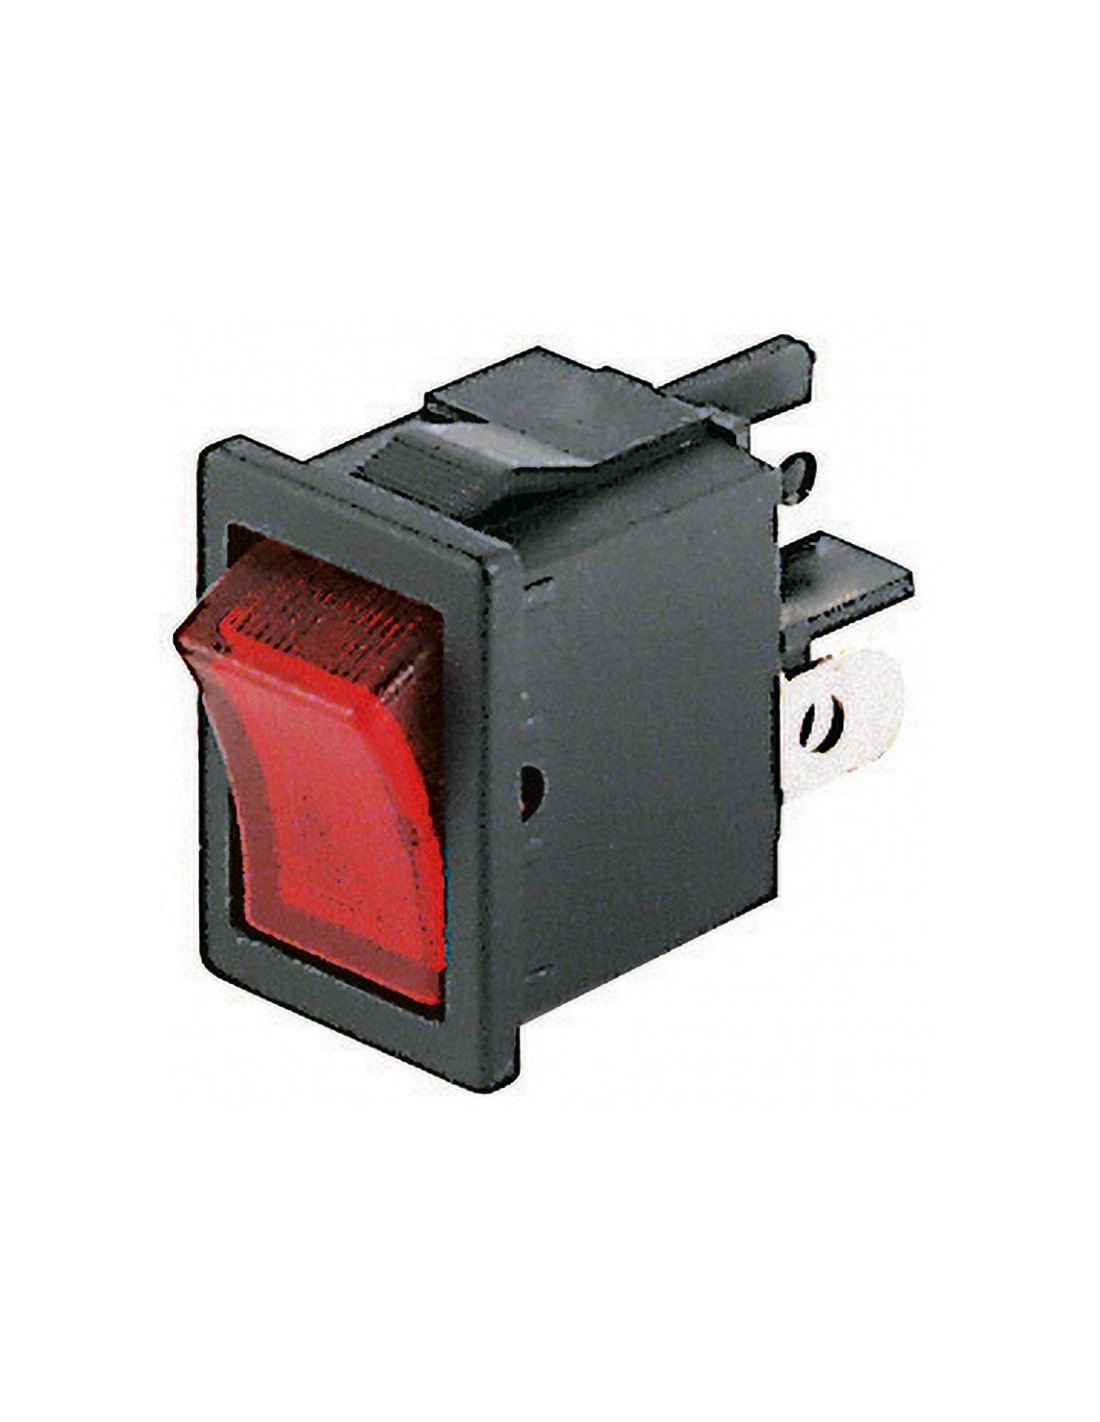 Interrupteur à bascule unipolaire SPST ON-OFF avec bouton lumineux rouge et  bornes faston 4,8